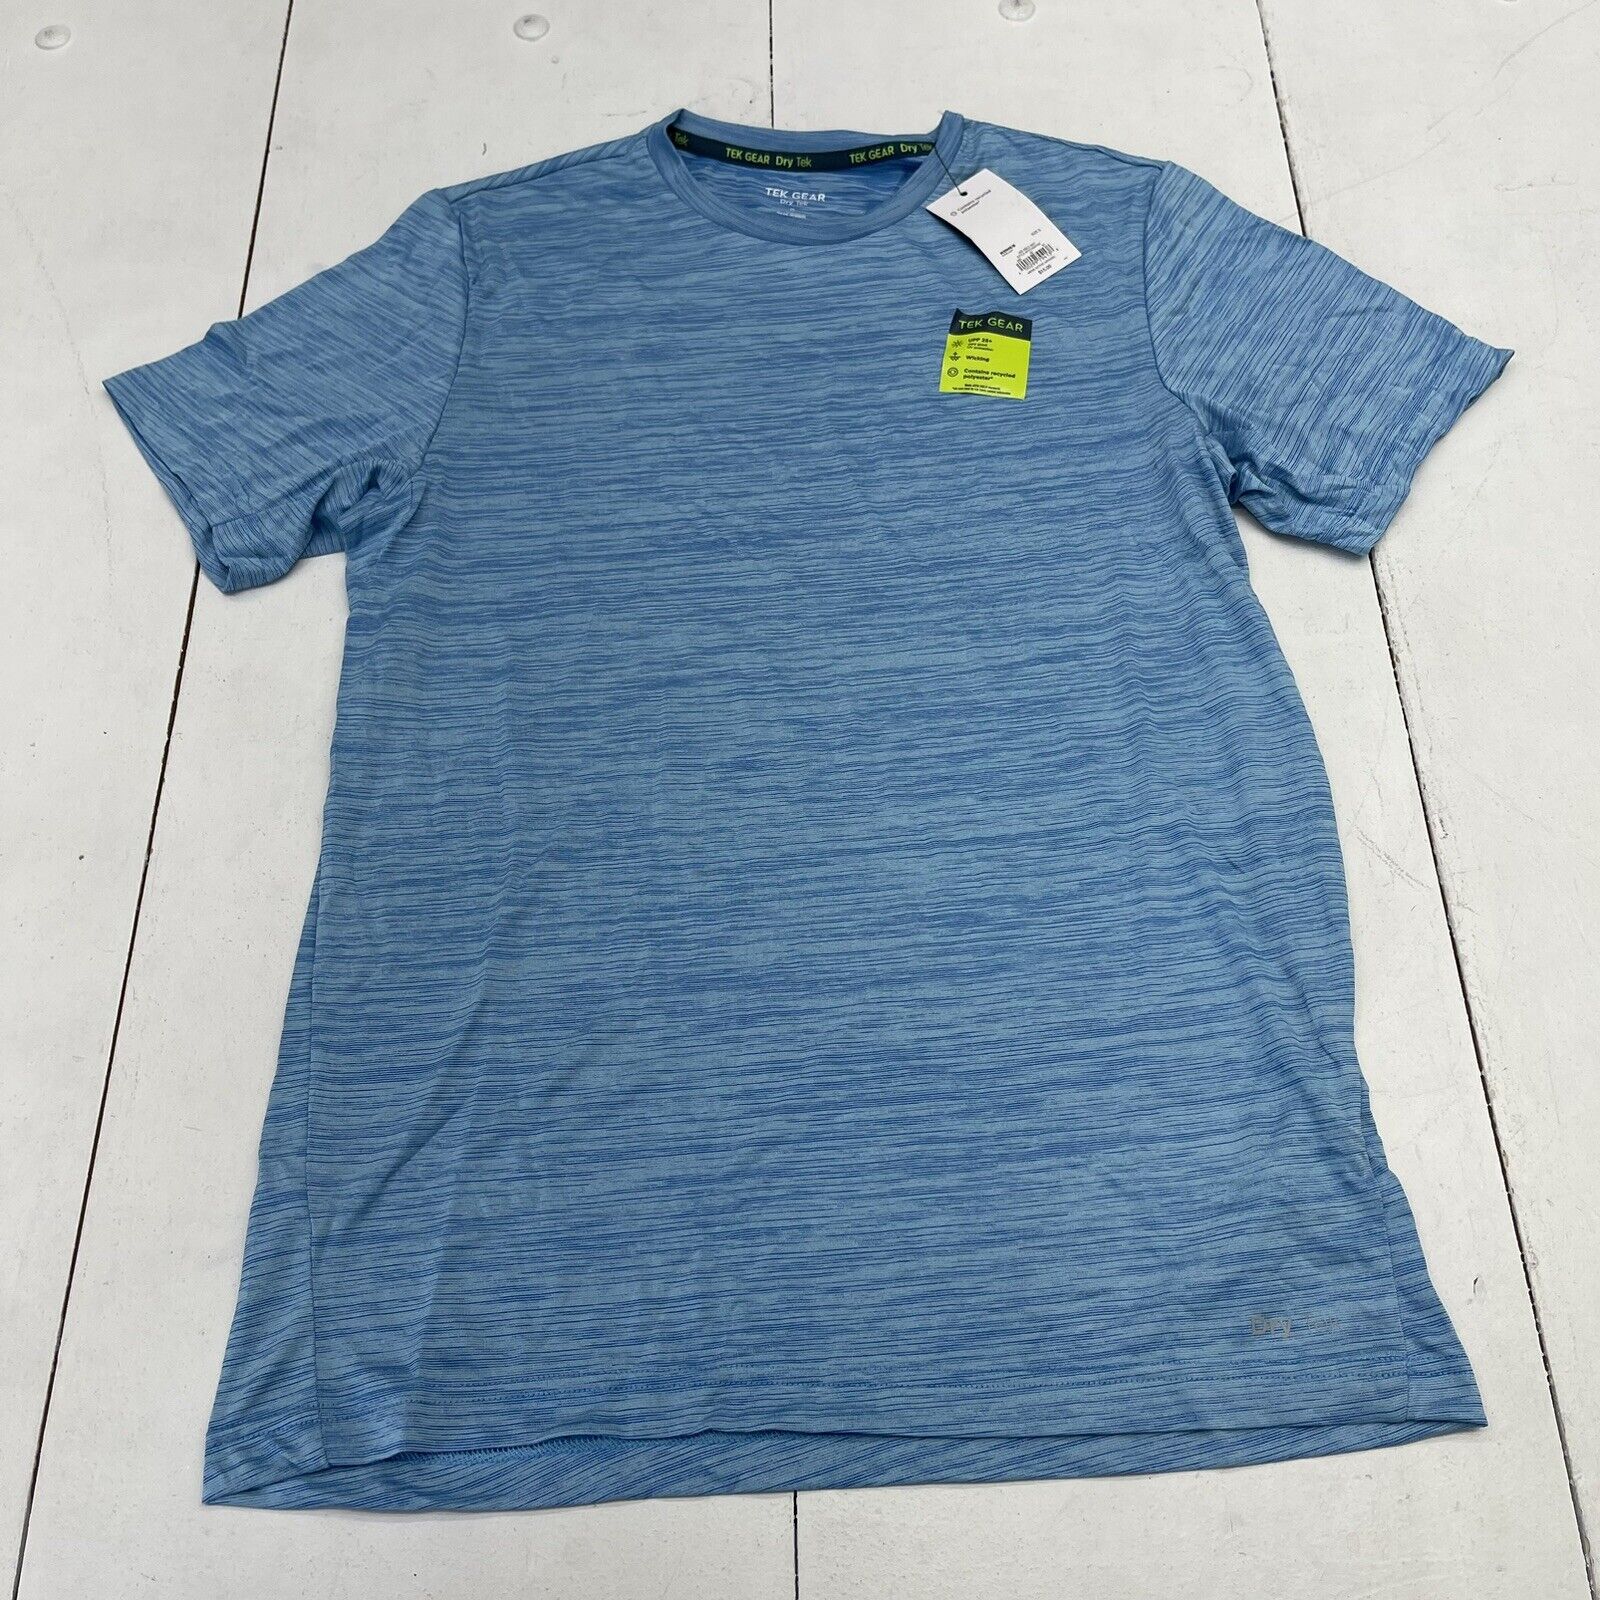 Tek Gear light blue Dry Tech workout shirt